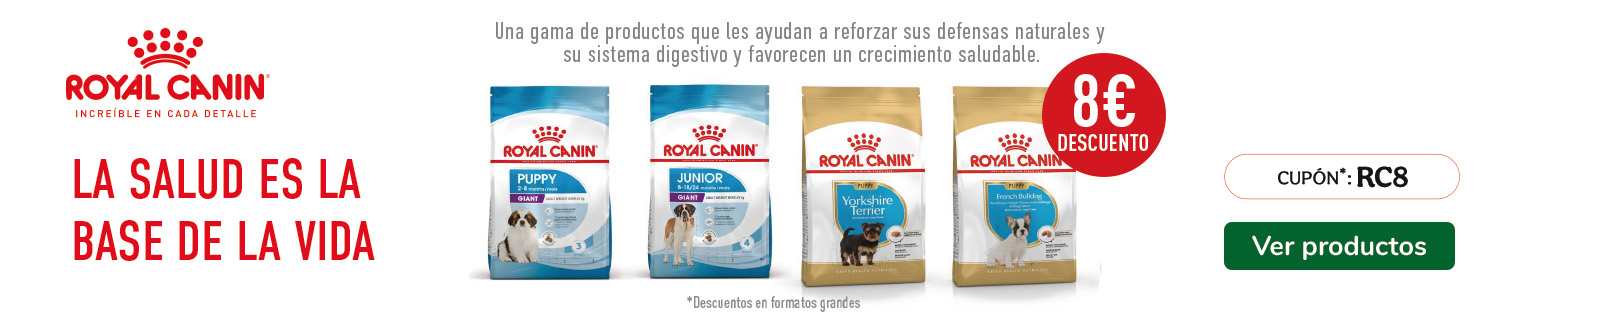 Hasta 8€ dto en formatos seleccionados de razas Royal Canin para perro y gato